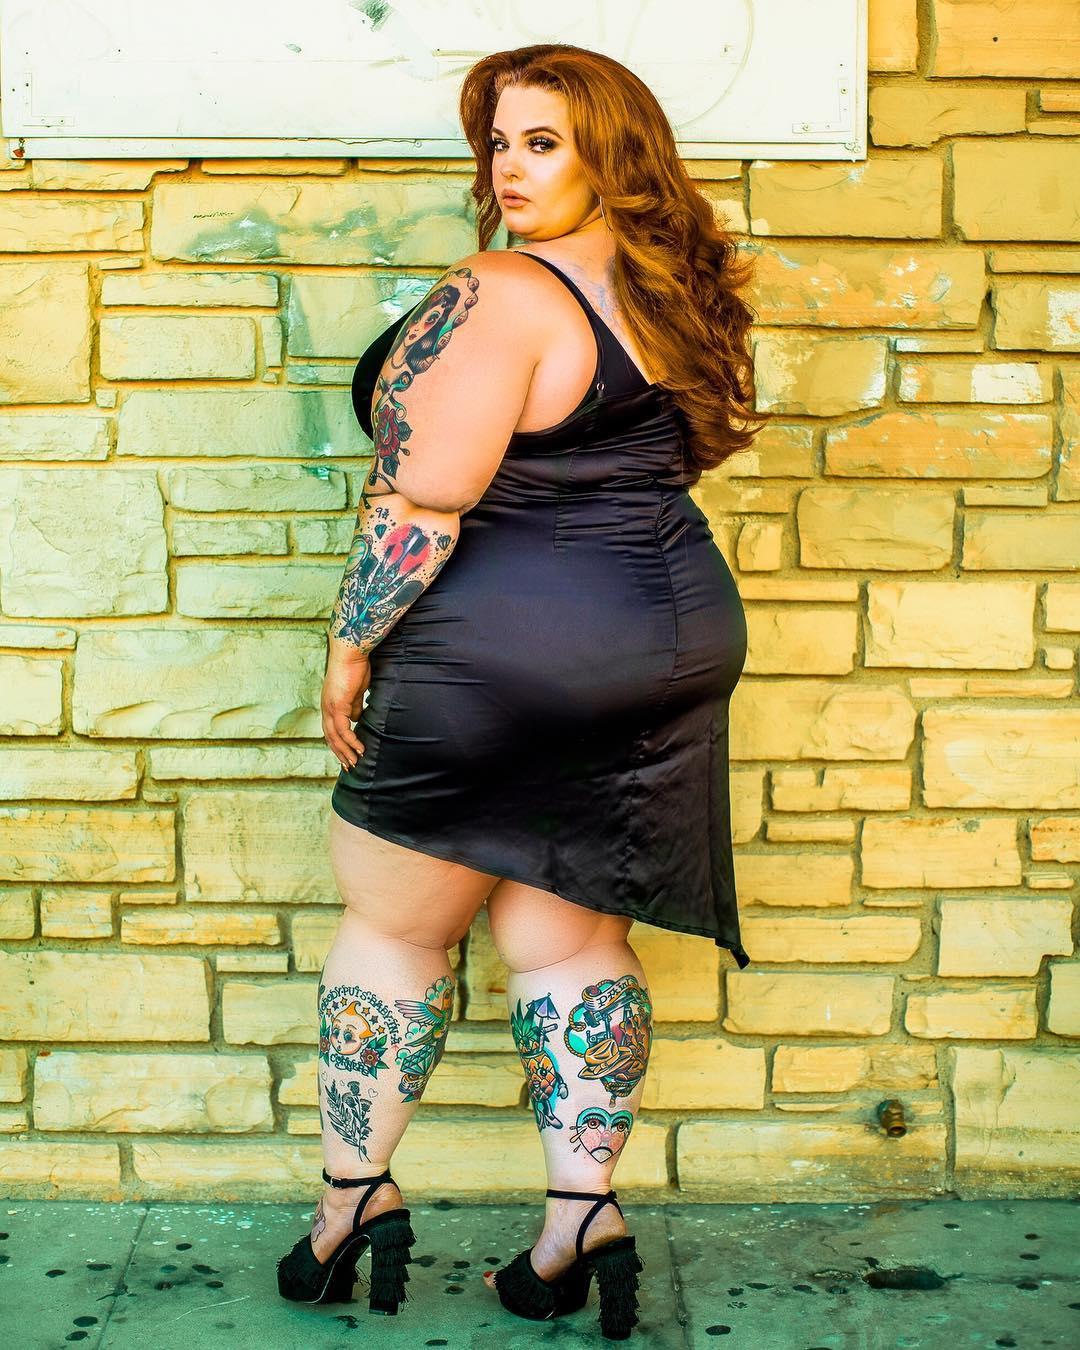 Тесс Холлидей весит 155 кг, но это не мешает ей покорять мир своими формами и стилем